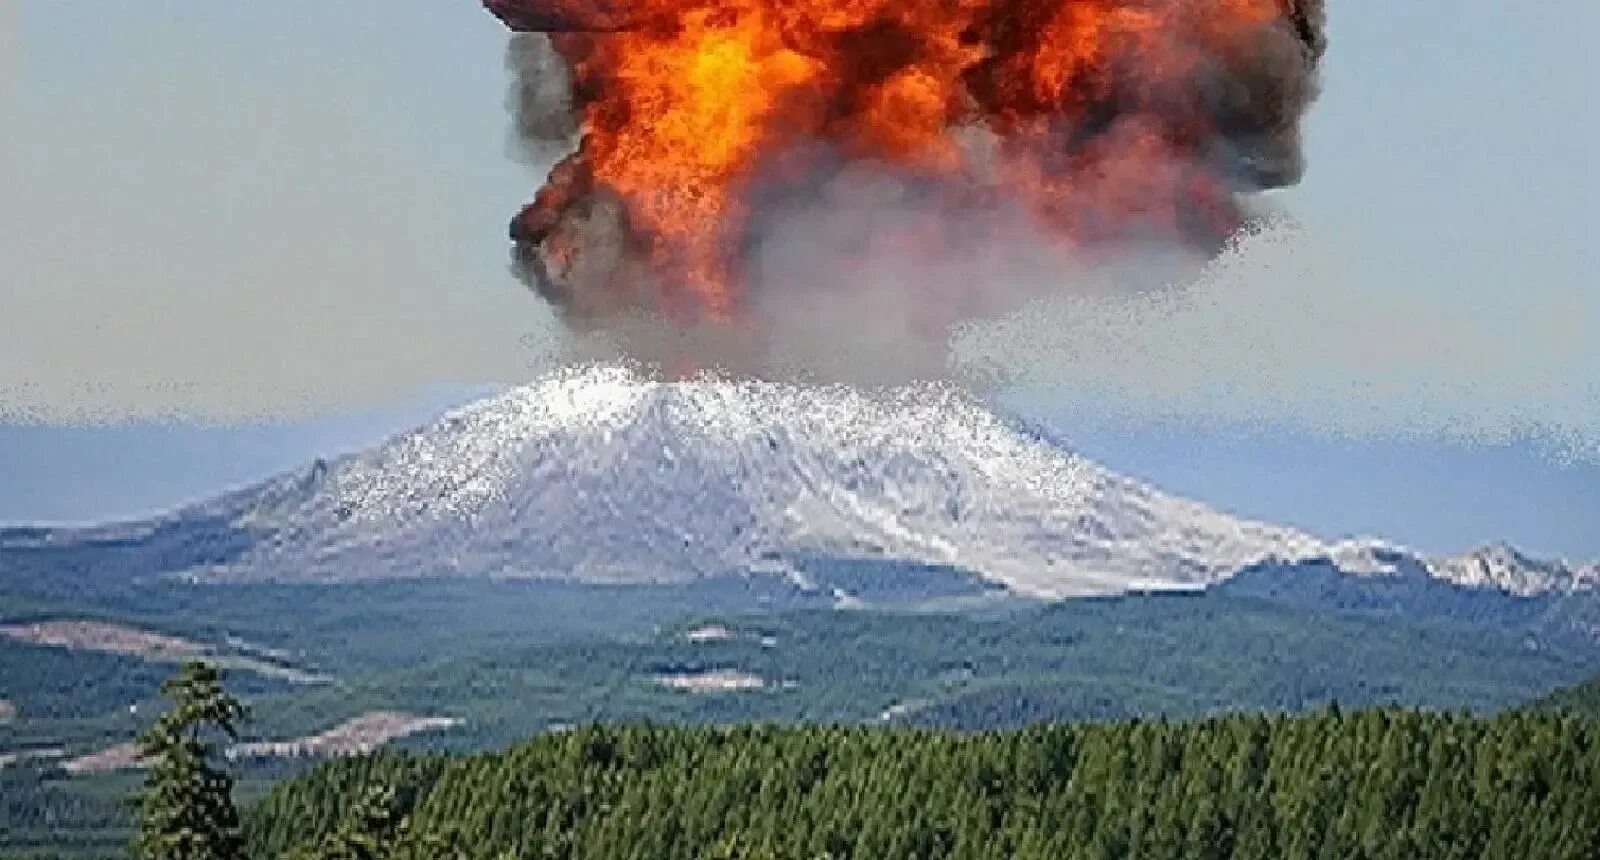 Опасен ли вулкан. Йеллоустоун вулкан. Извержение вулкана в США Йеллоустонский. Супервулкан Йеллоустоун извержение. Кальдера вулкана Йеллоустоун.